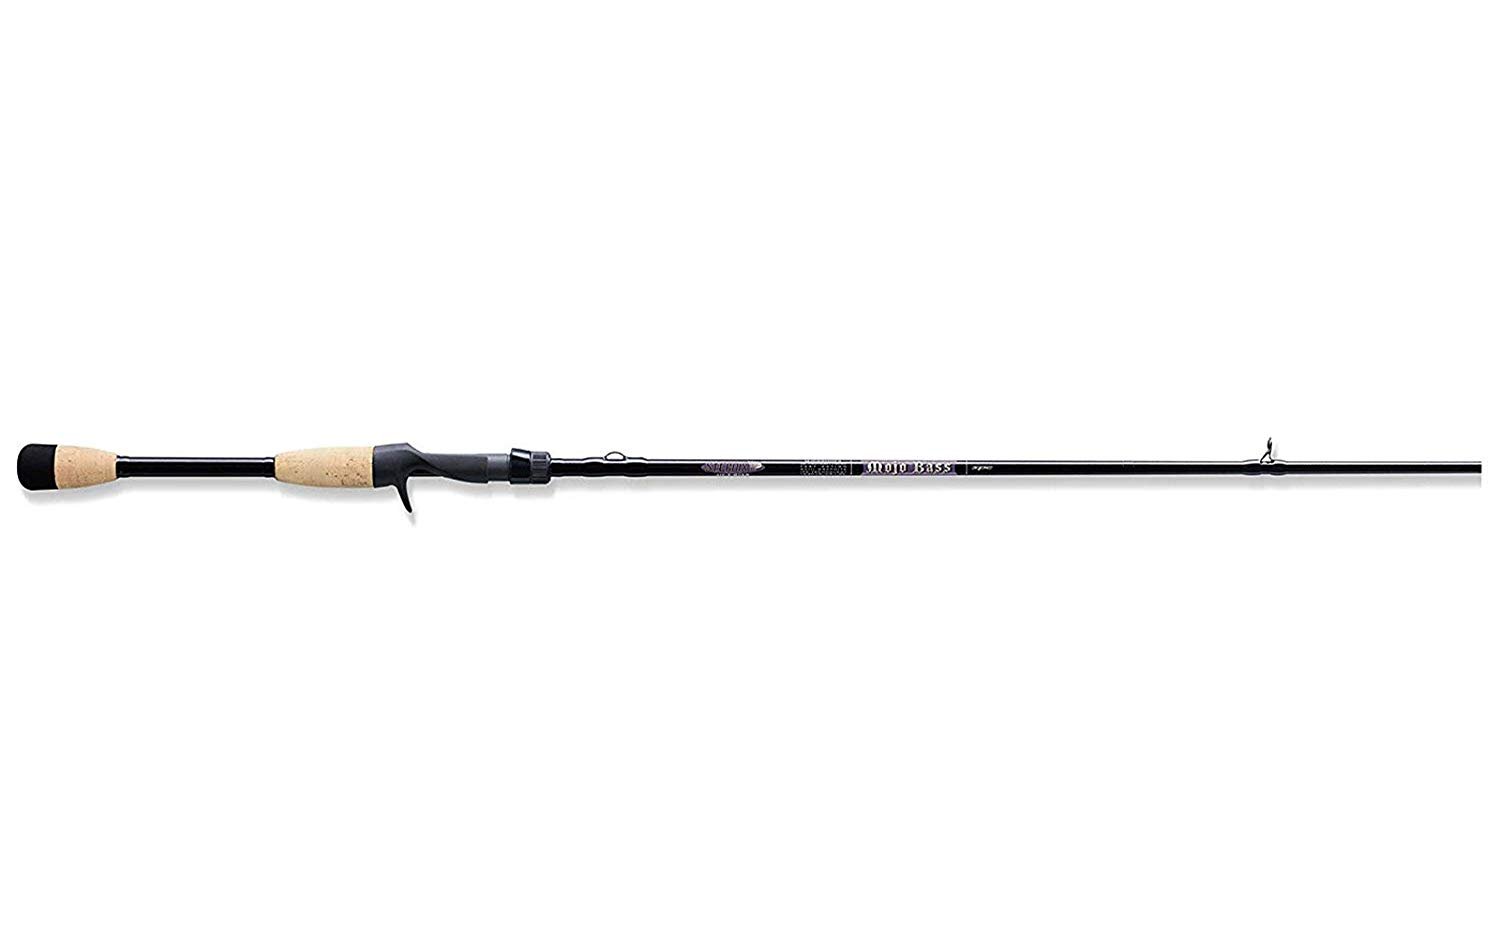 St.Croix Mojo Bass 6.8ft Mxf 1pc Casting Rod (Mjc68mxf), Titanium